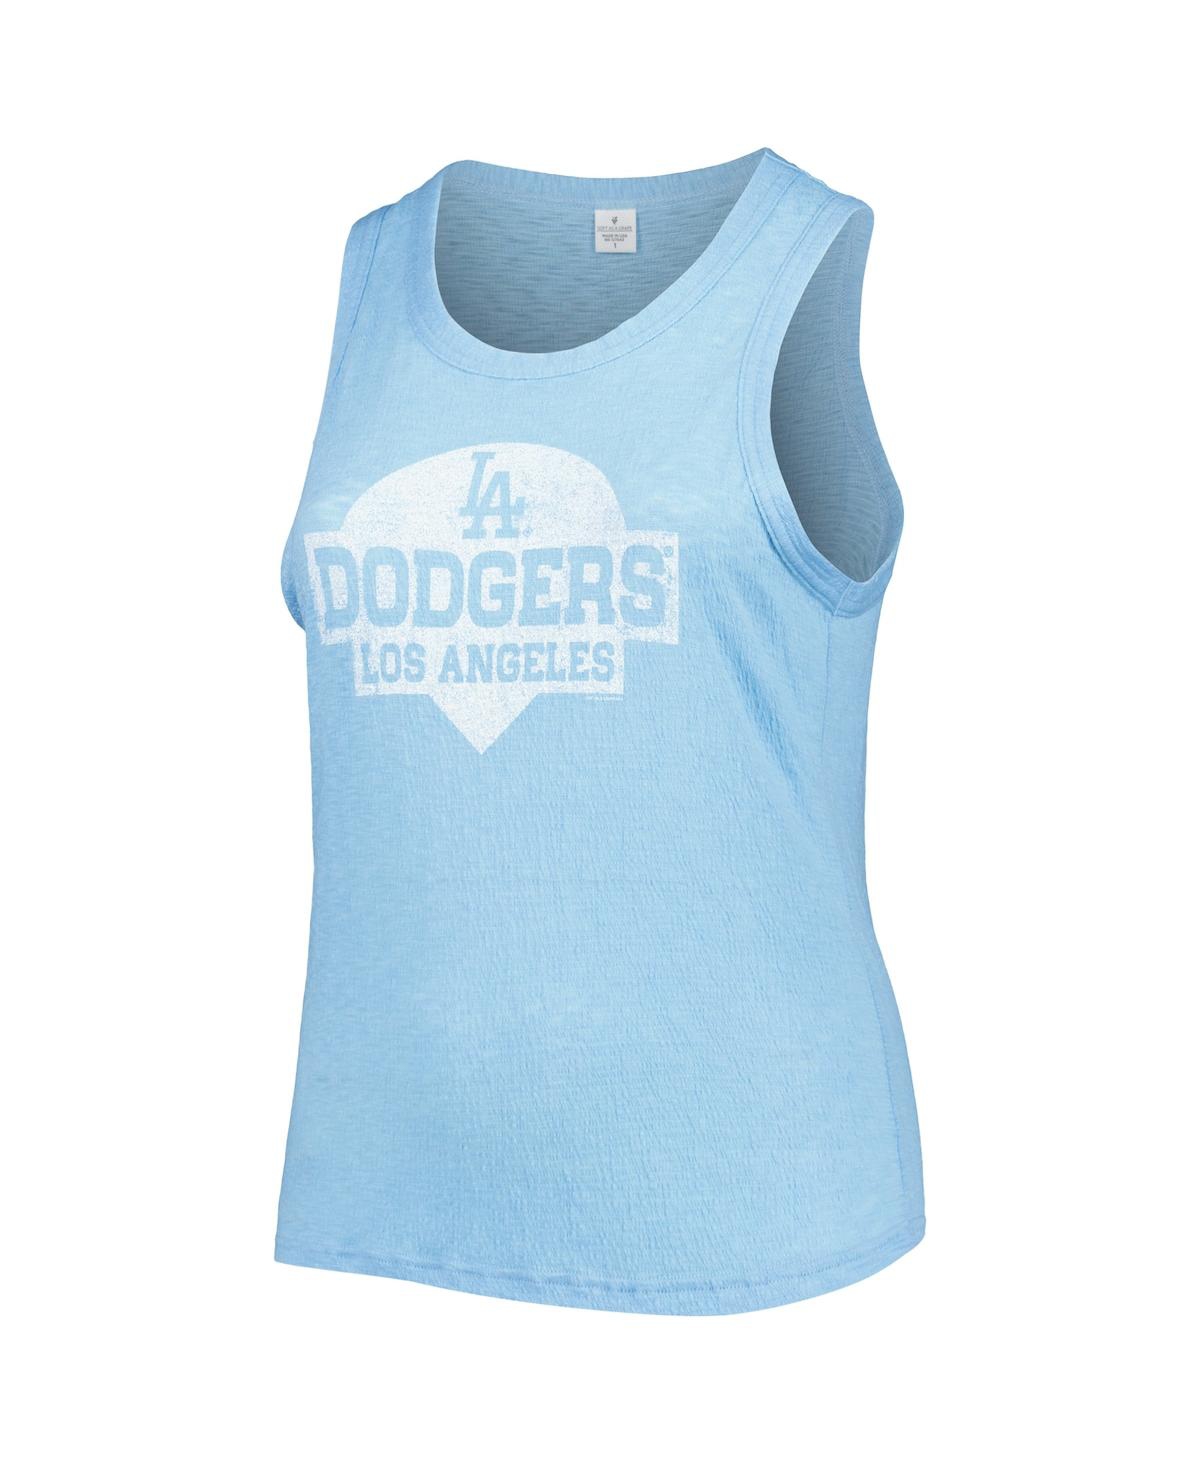 Shop Soft As A Grape Women's  Royal Los Angeles Dodgers Plus Size High Neck Tri-blend Tank Top